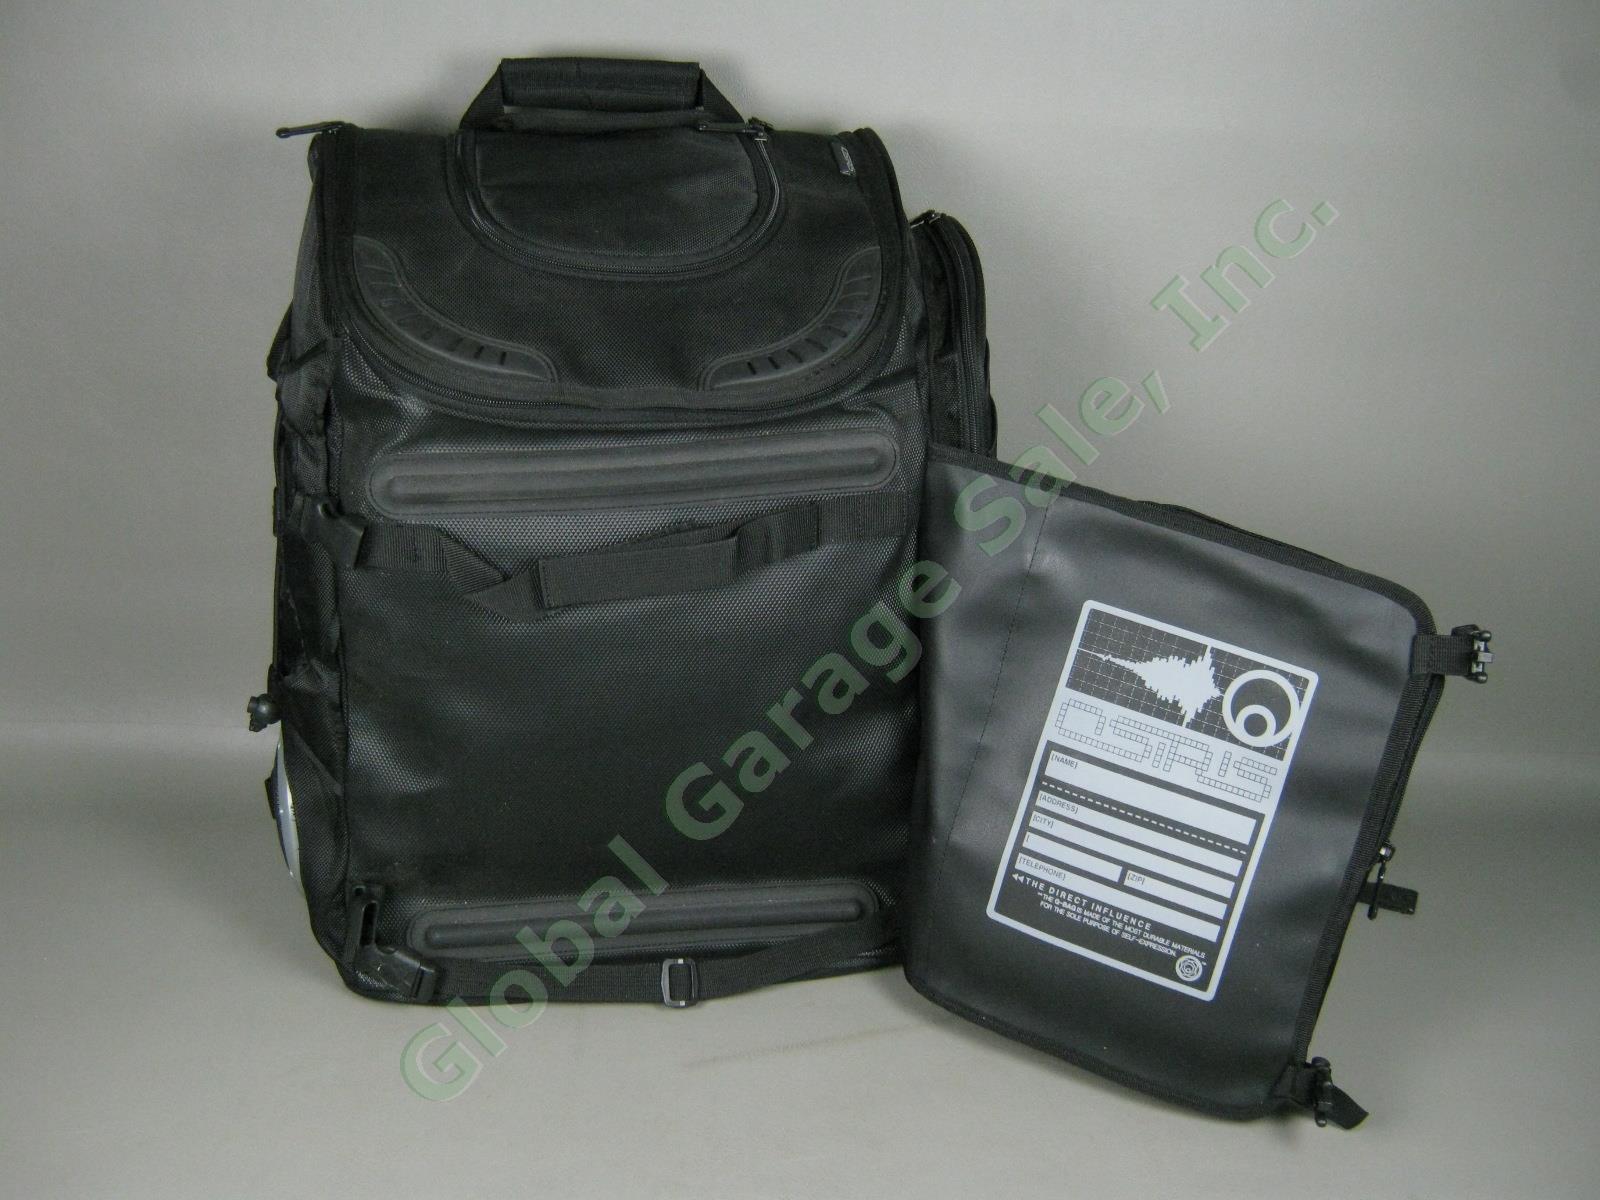 NOS Osiris G-Bag Metatron 2100 Backpack Skate Pack w/ Stereo Speakers + Amp NR! 8